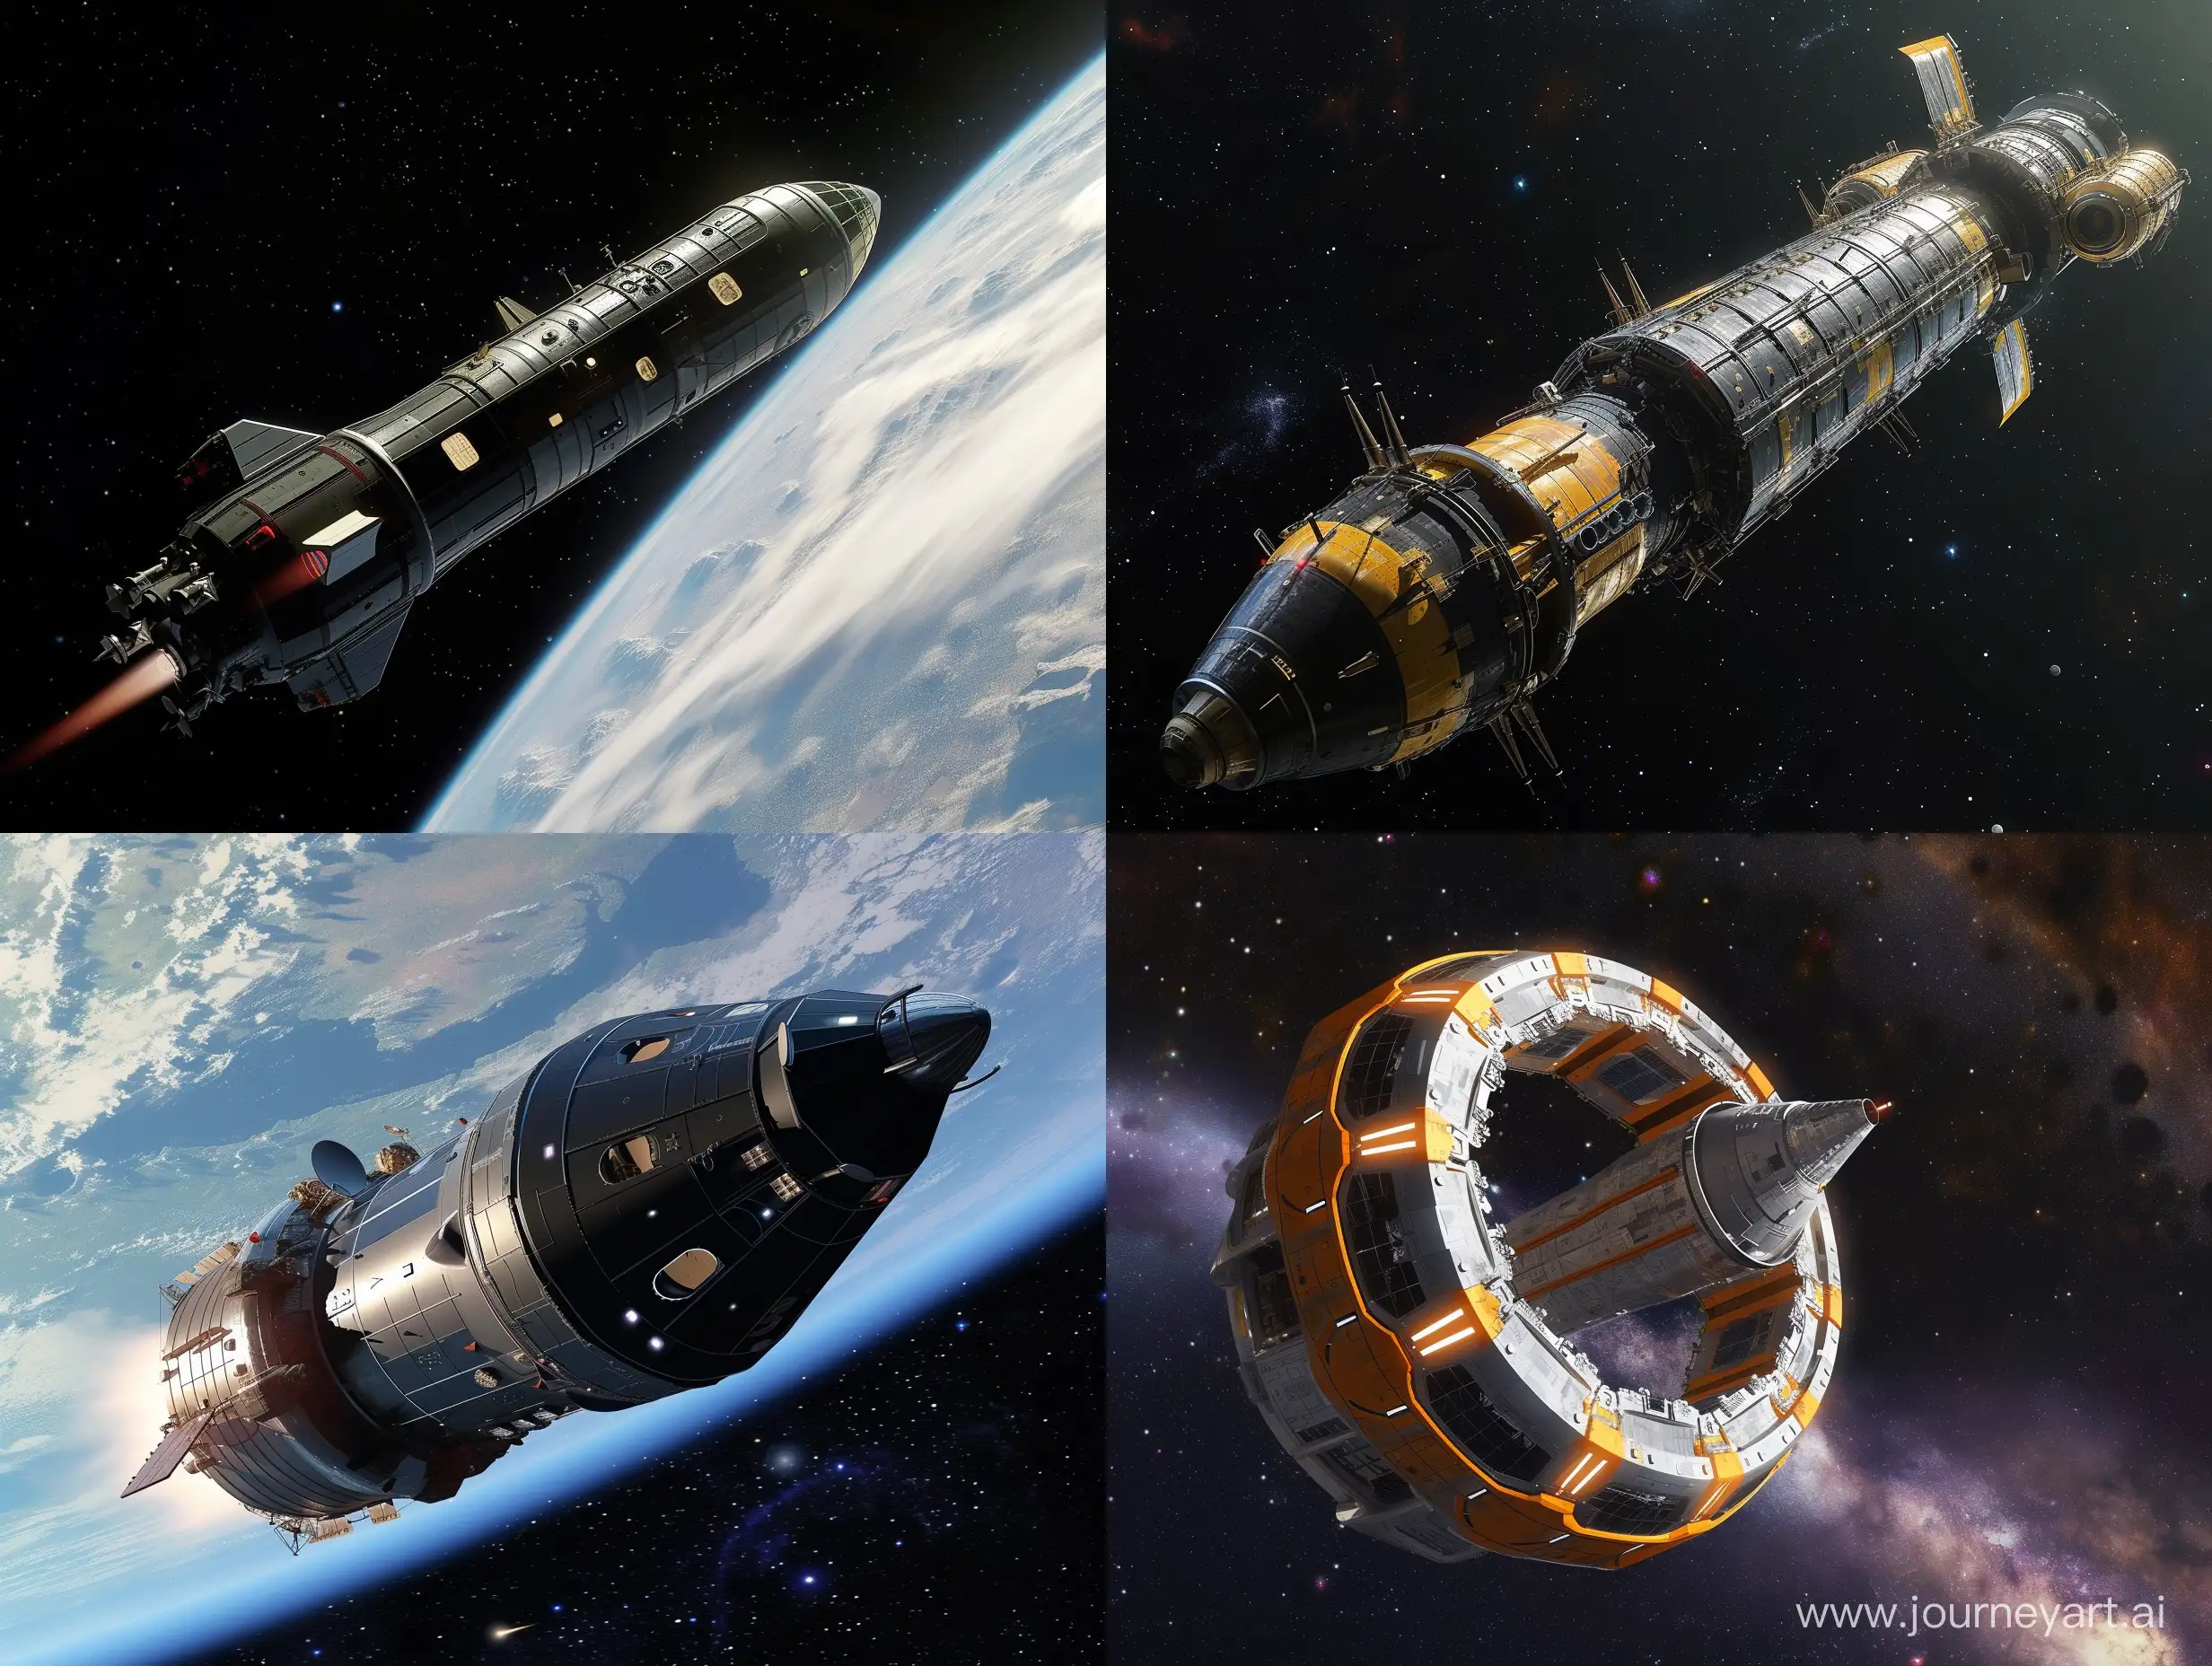 Futuristic-Spacecraft-Exploration-in-Vast-Cosmos